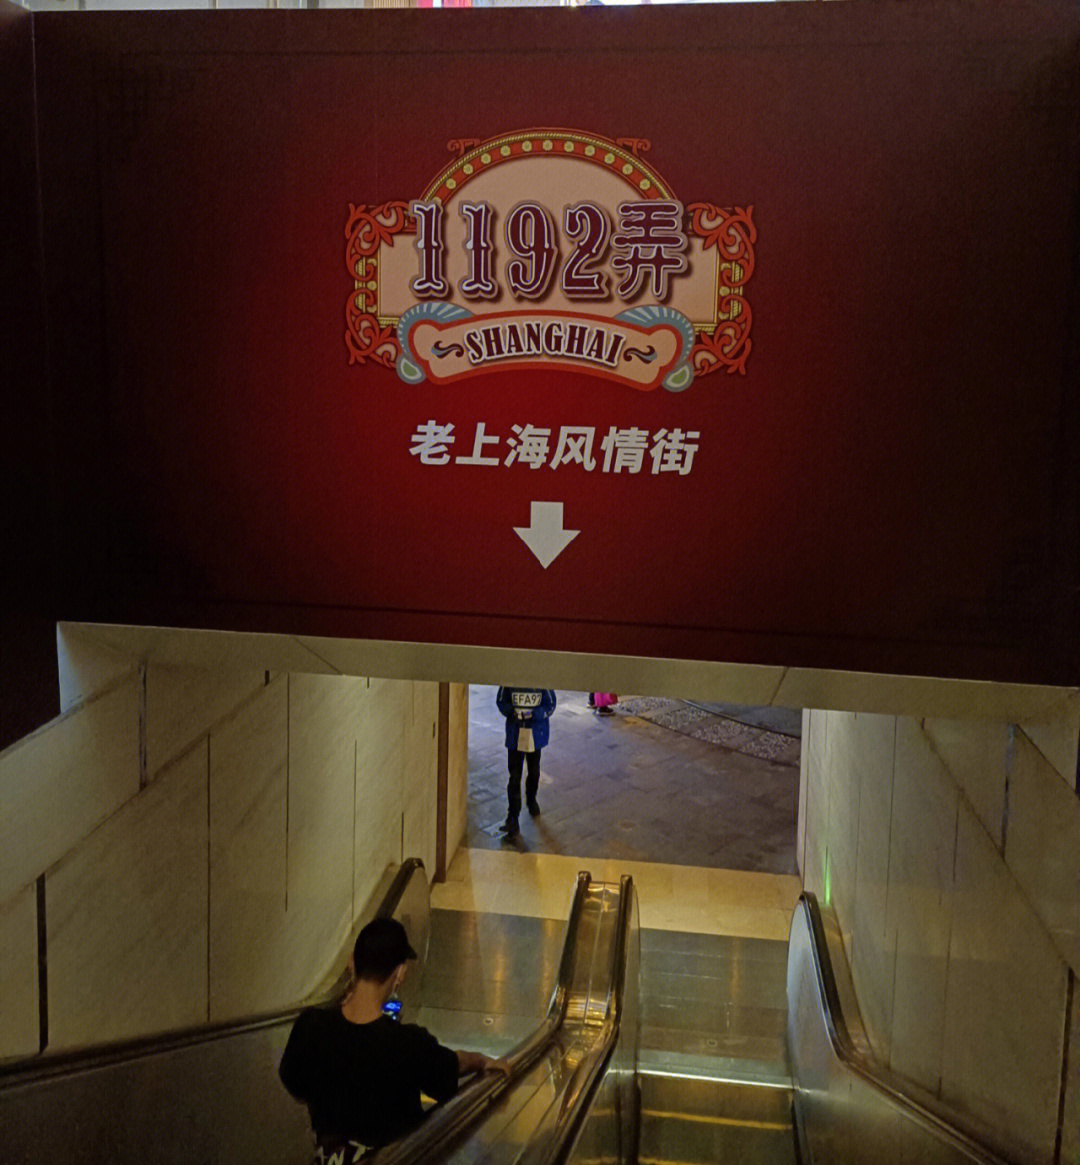 世纪汇广场,地下二层,整个地下二层都是老上海的味道,特别适合打卡